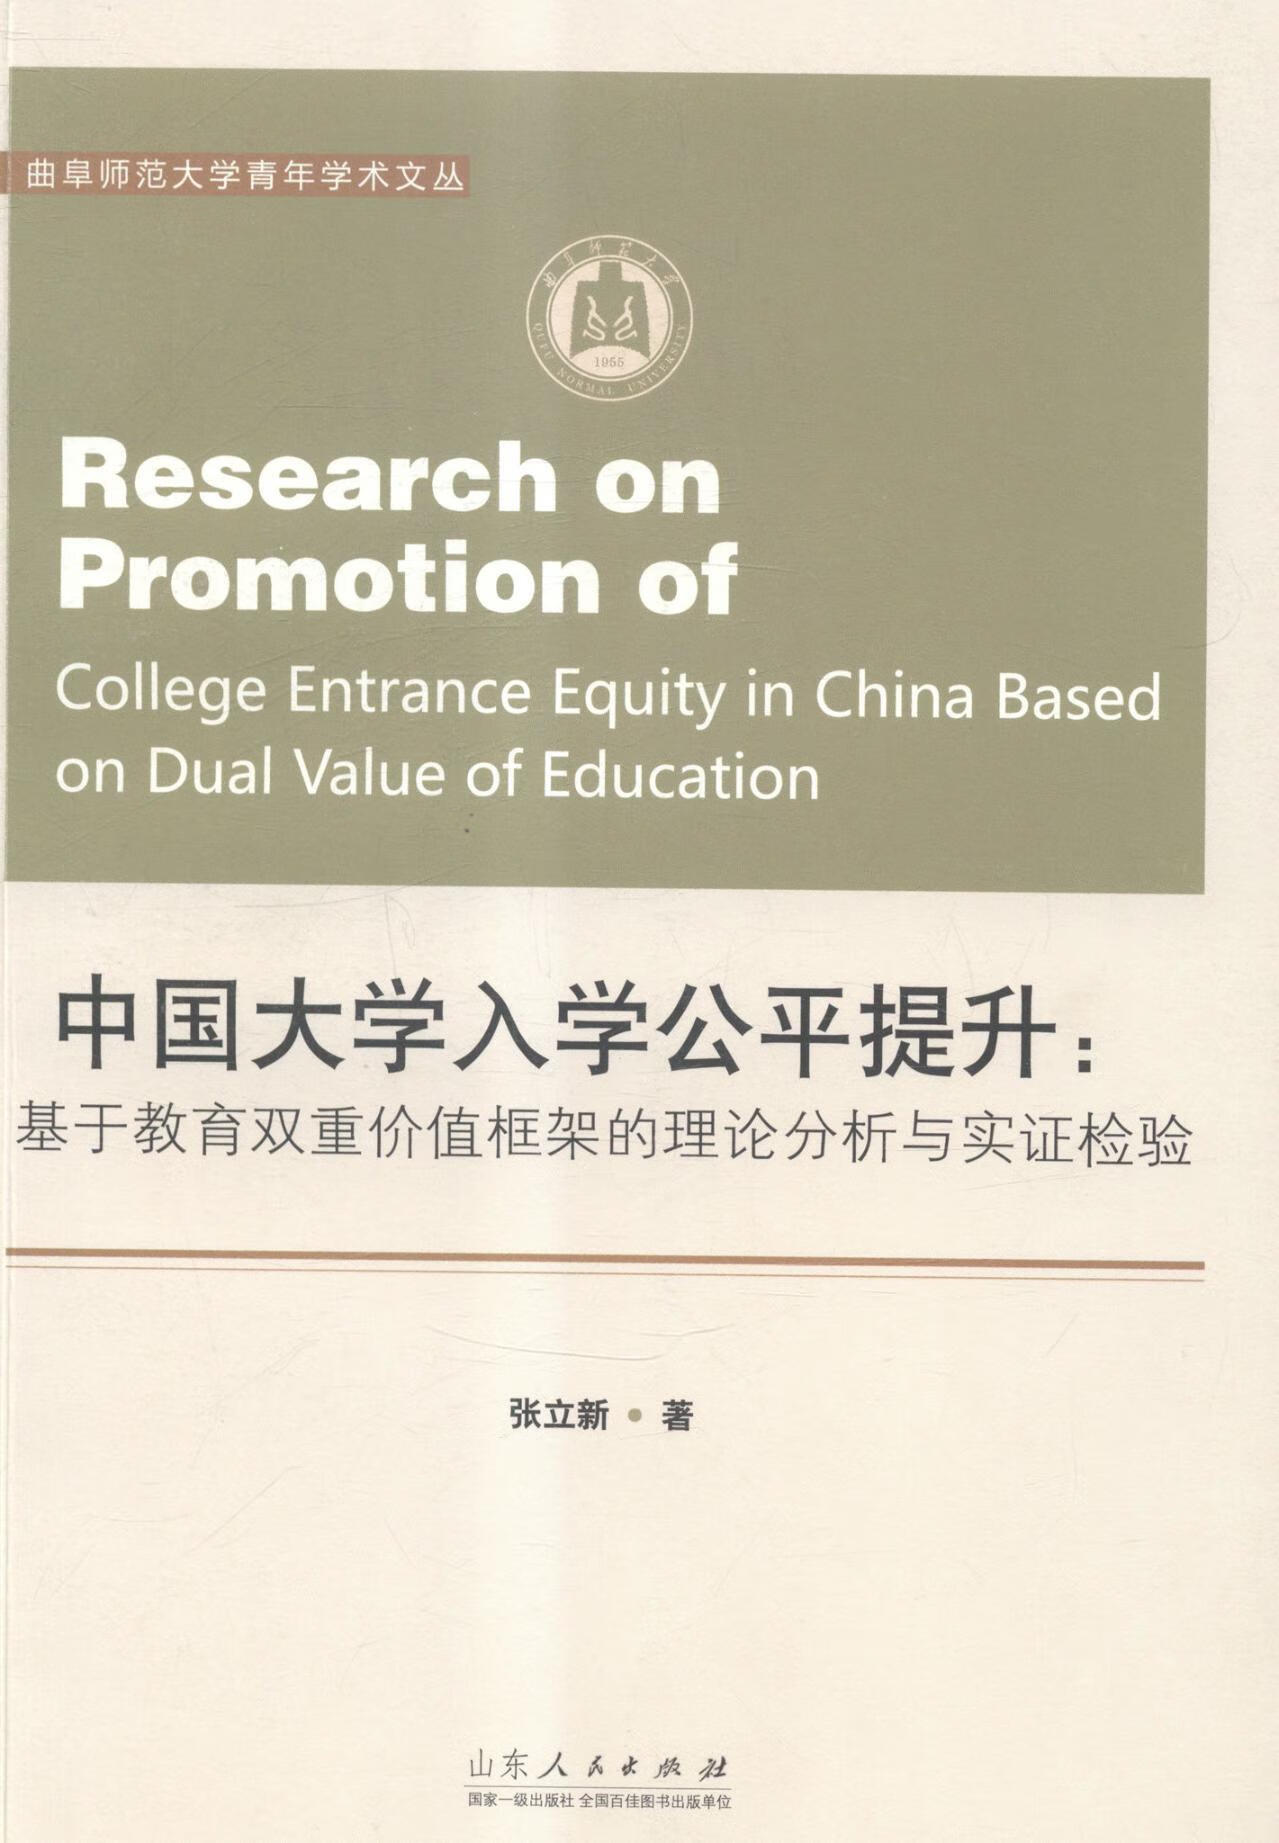 中国大学入学公平提升;基于教育双重价值框架的理论分析与实证检验张立新山东人民出版社978720908 azw3格式下载